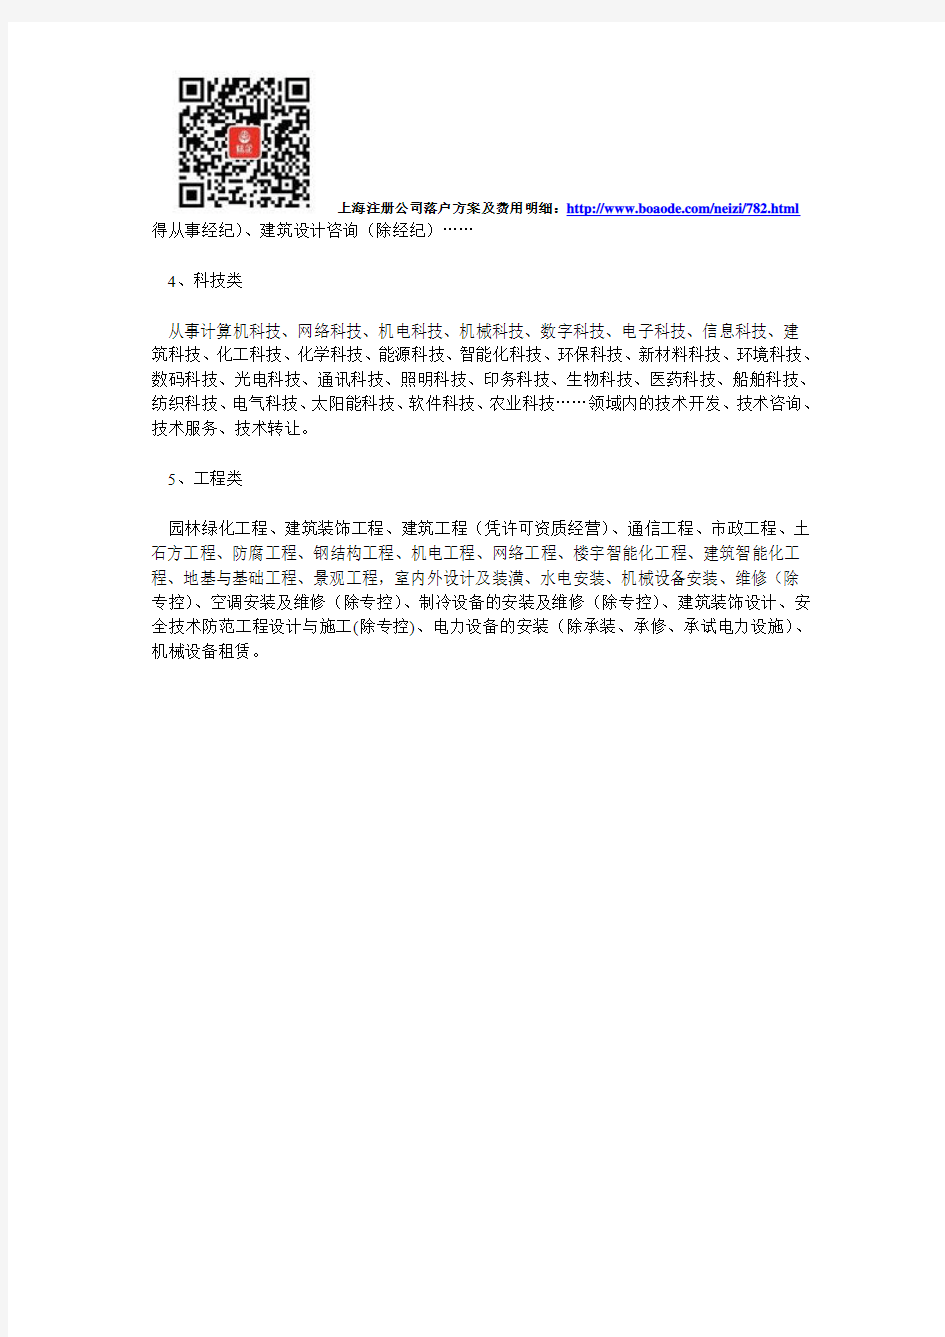 上海注册公司通常可选经营范围